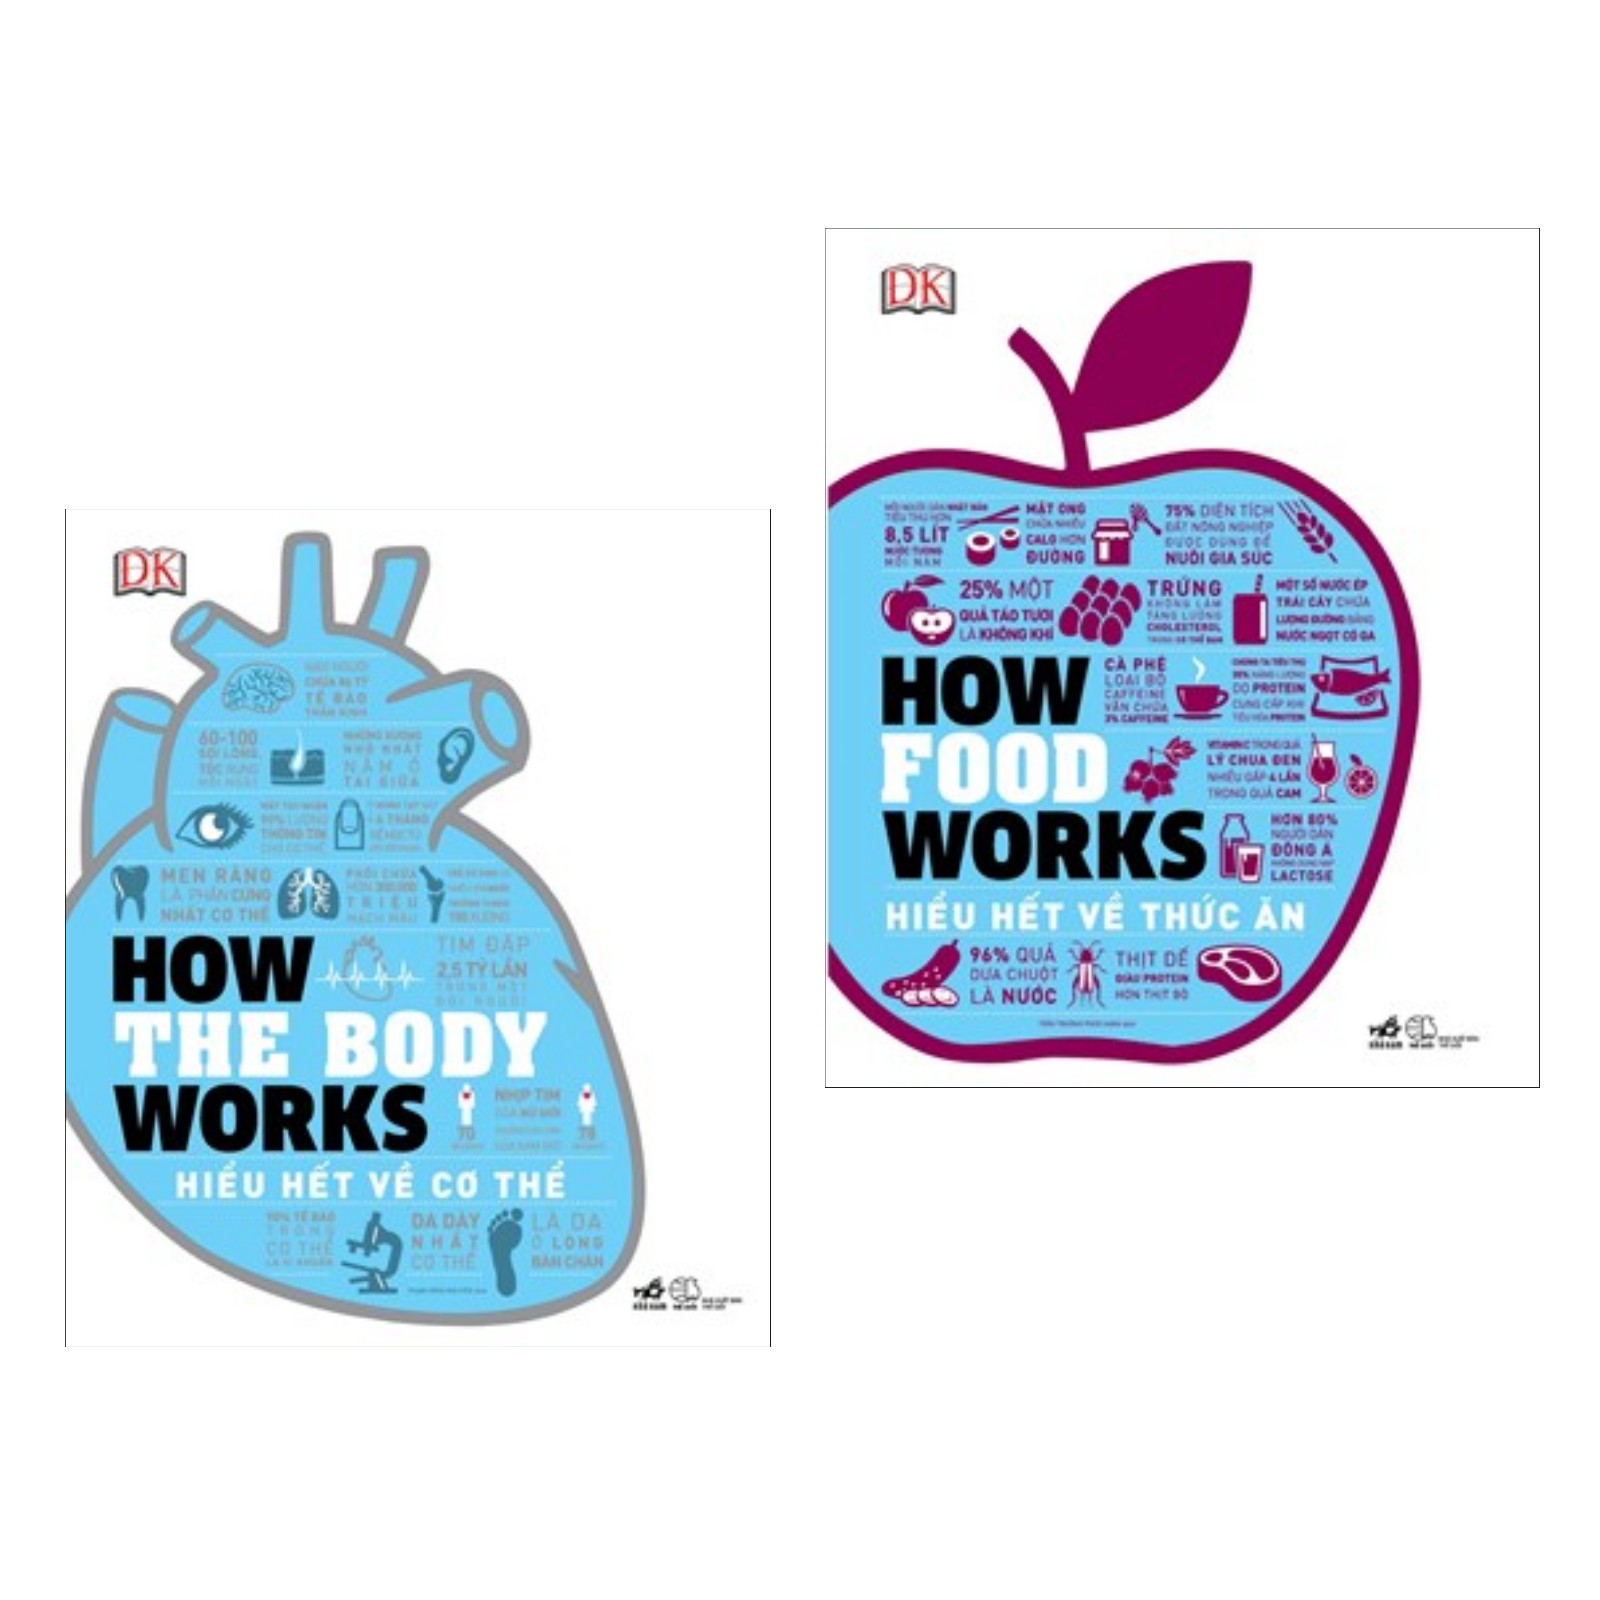 Combo Sách Chăm Sóc Sức Khỏe Hay : How The Body Works - Hiểu Biết Về Cơ Thể + How Food Works - Hiểu Biết Về Thức Ăn ( Tặng Kèm Postcard HAPPY LIFE )